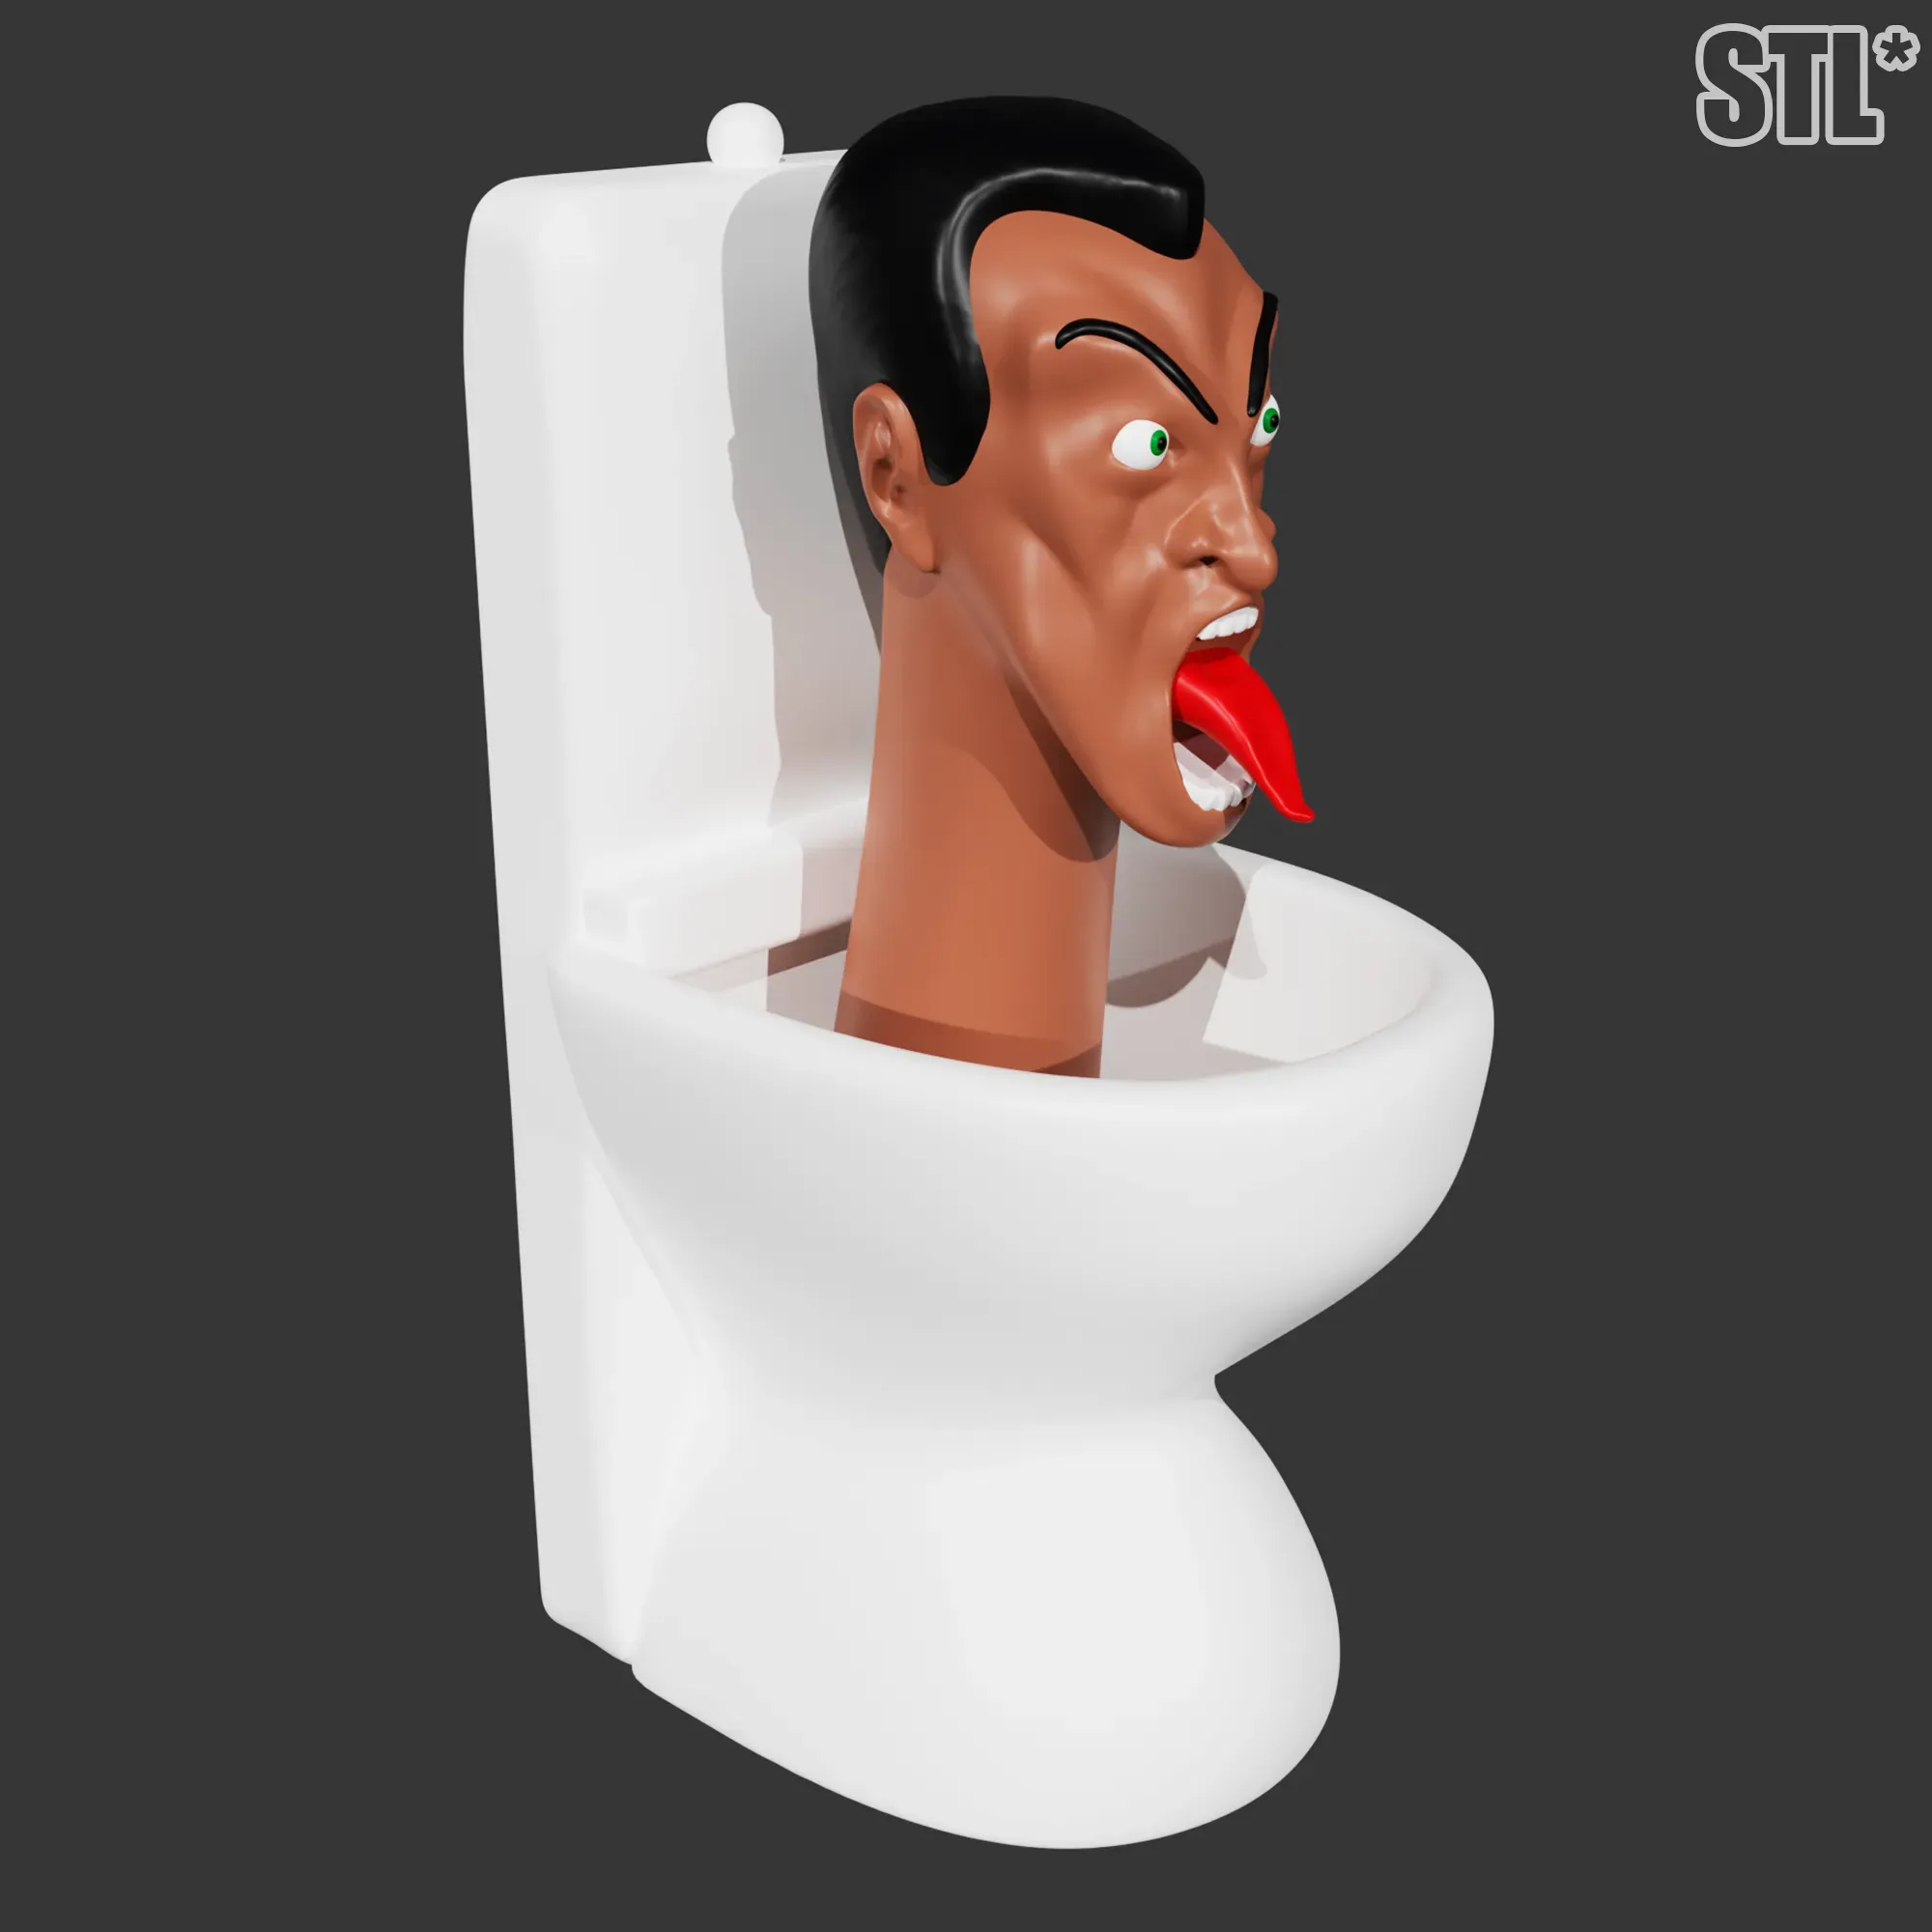 G-Man Toilet V1-2 Movieclip